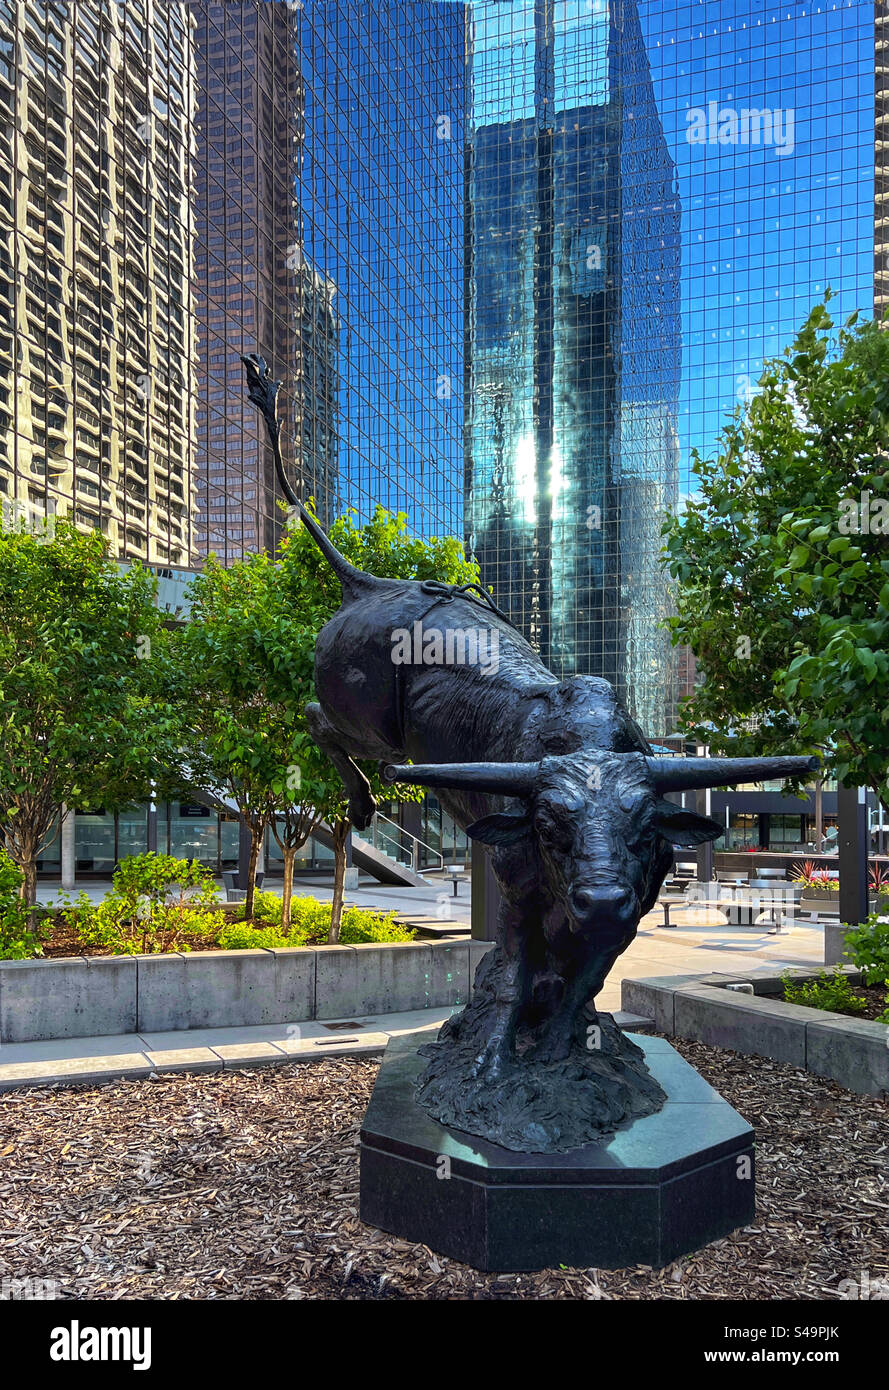 Bronzestatue von Outlaw, dem Rodeobullen, gegenüber von Calgary's Stock Exchange Tower. Downtown Calgary, Alberta, Kanada. Stockfoto